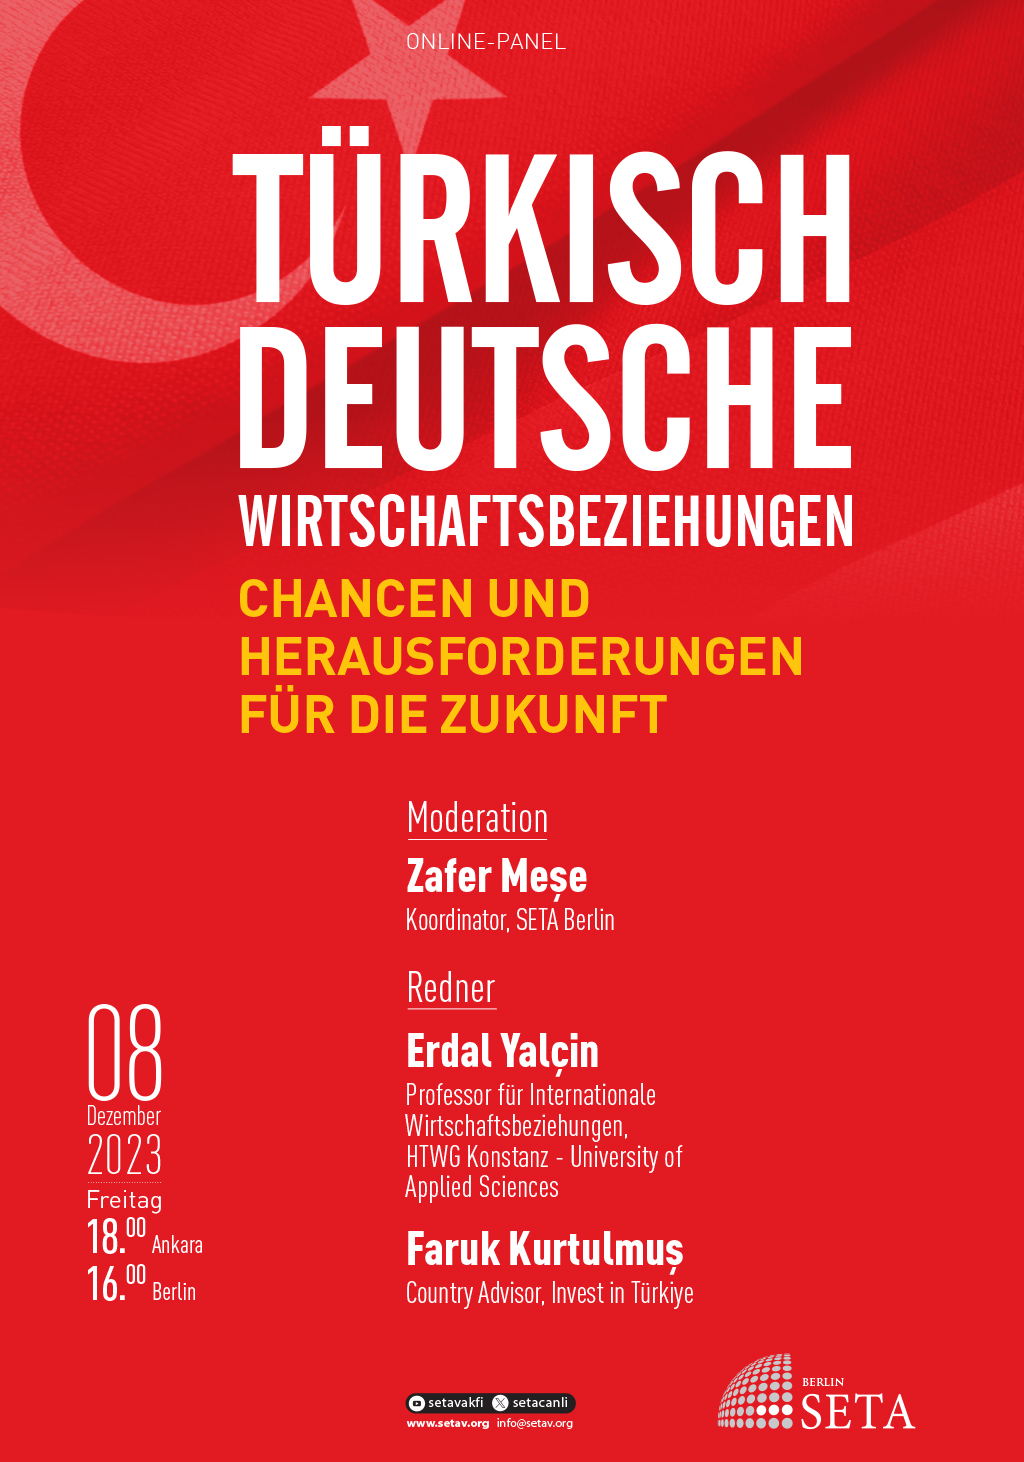 Online Panel: Türkisch-Deutsche Wirtschaftsbeziehungen | Chancen und Herausforderungen für die Zukunft